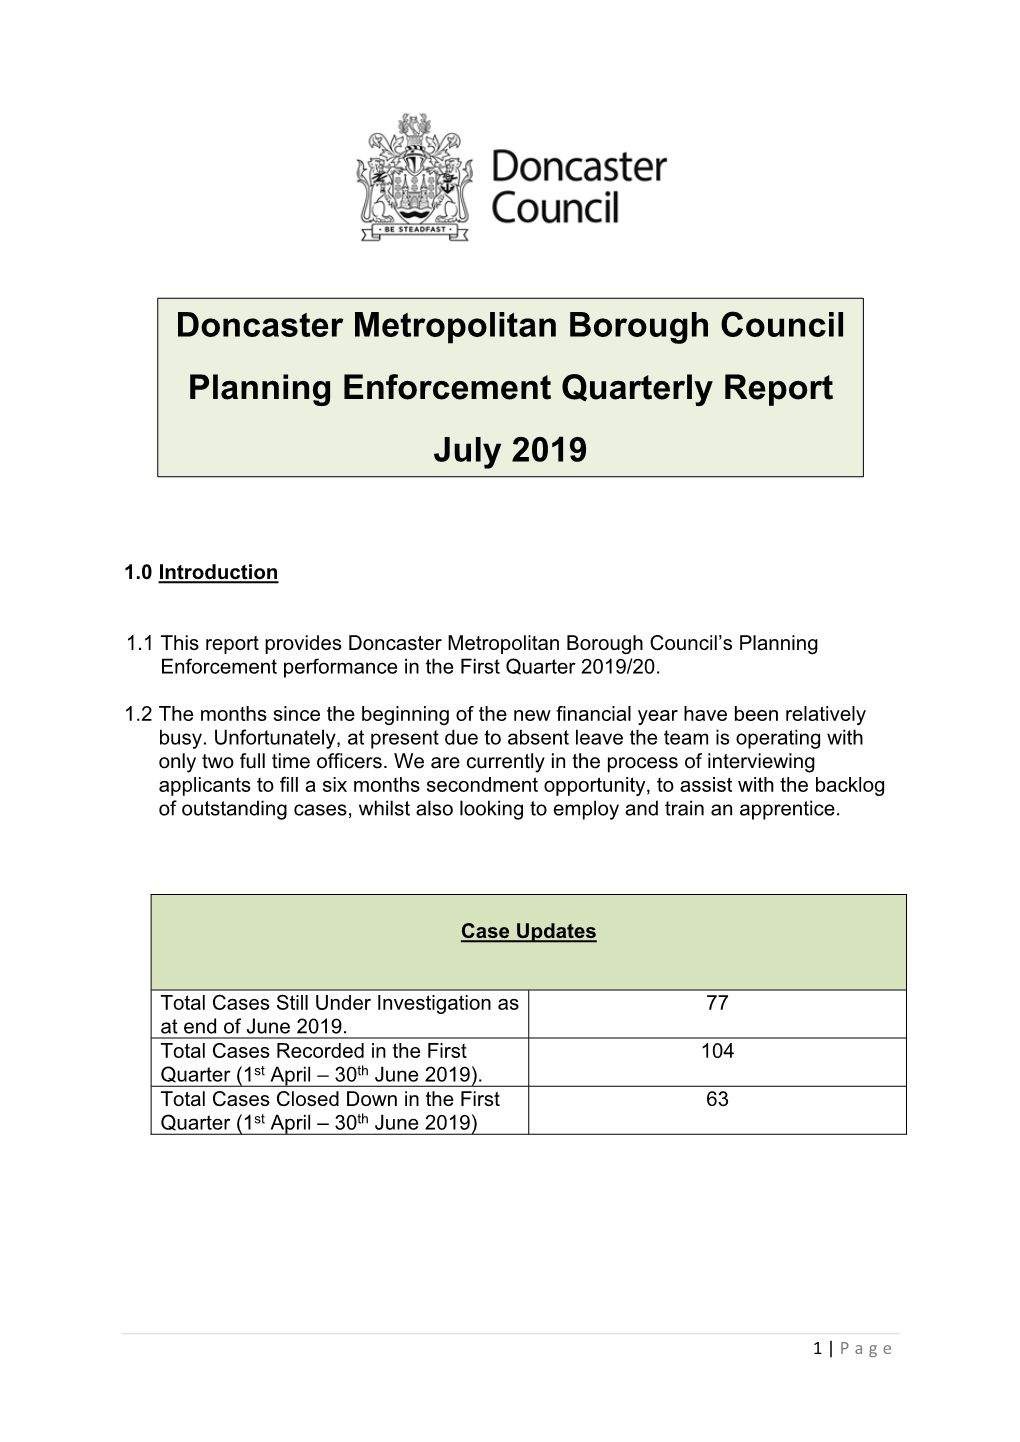 Doncaster Metropolitan Borough Council Planning Enforcement Quarterly Report July 2019